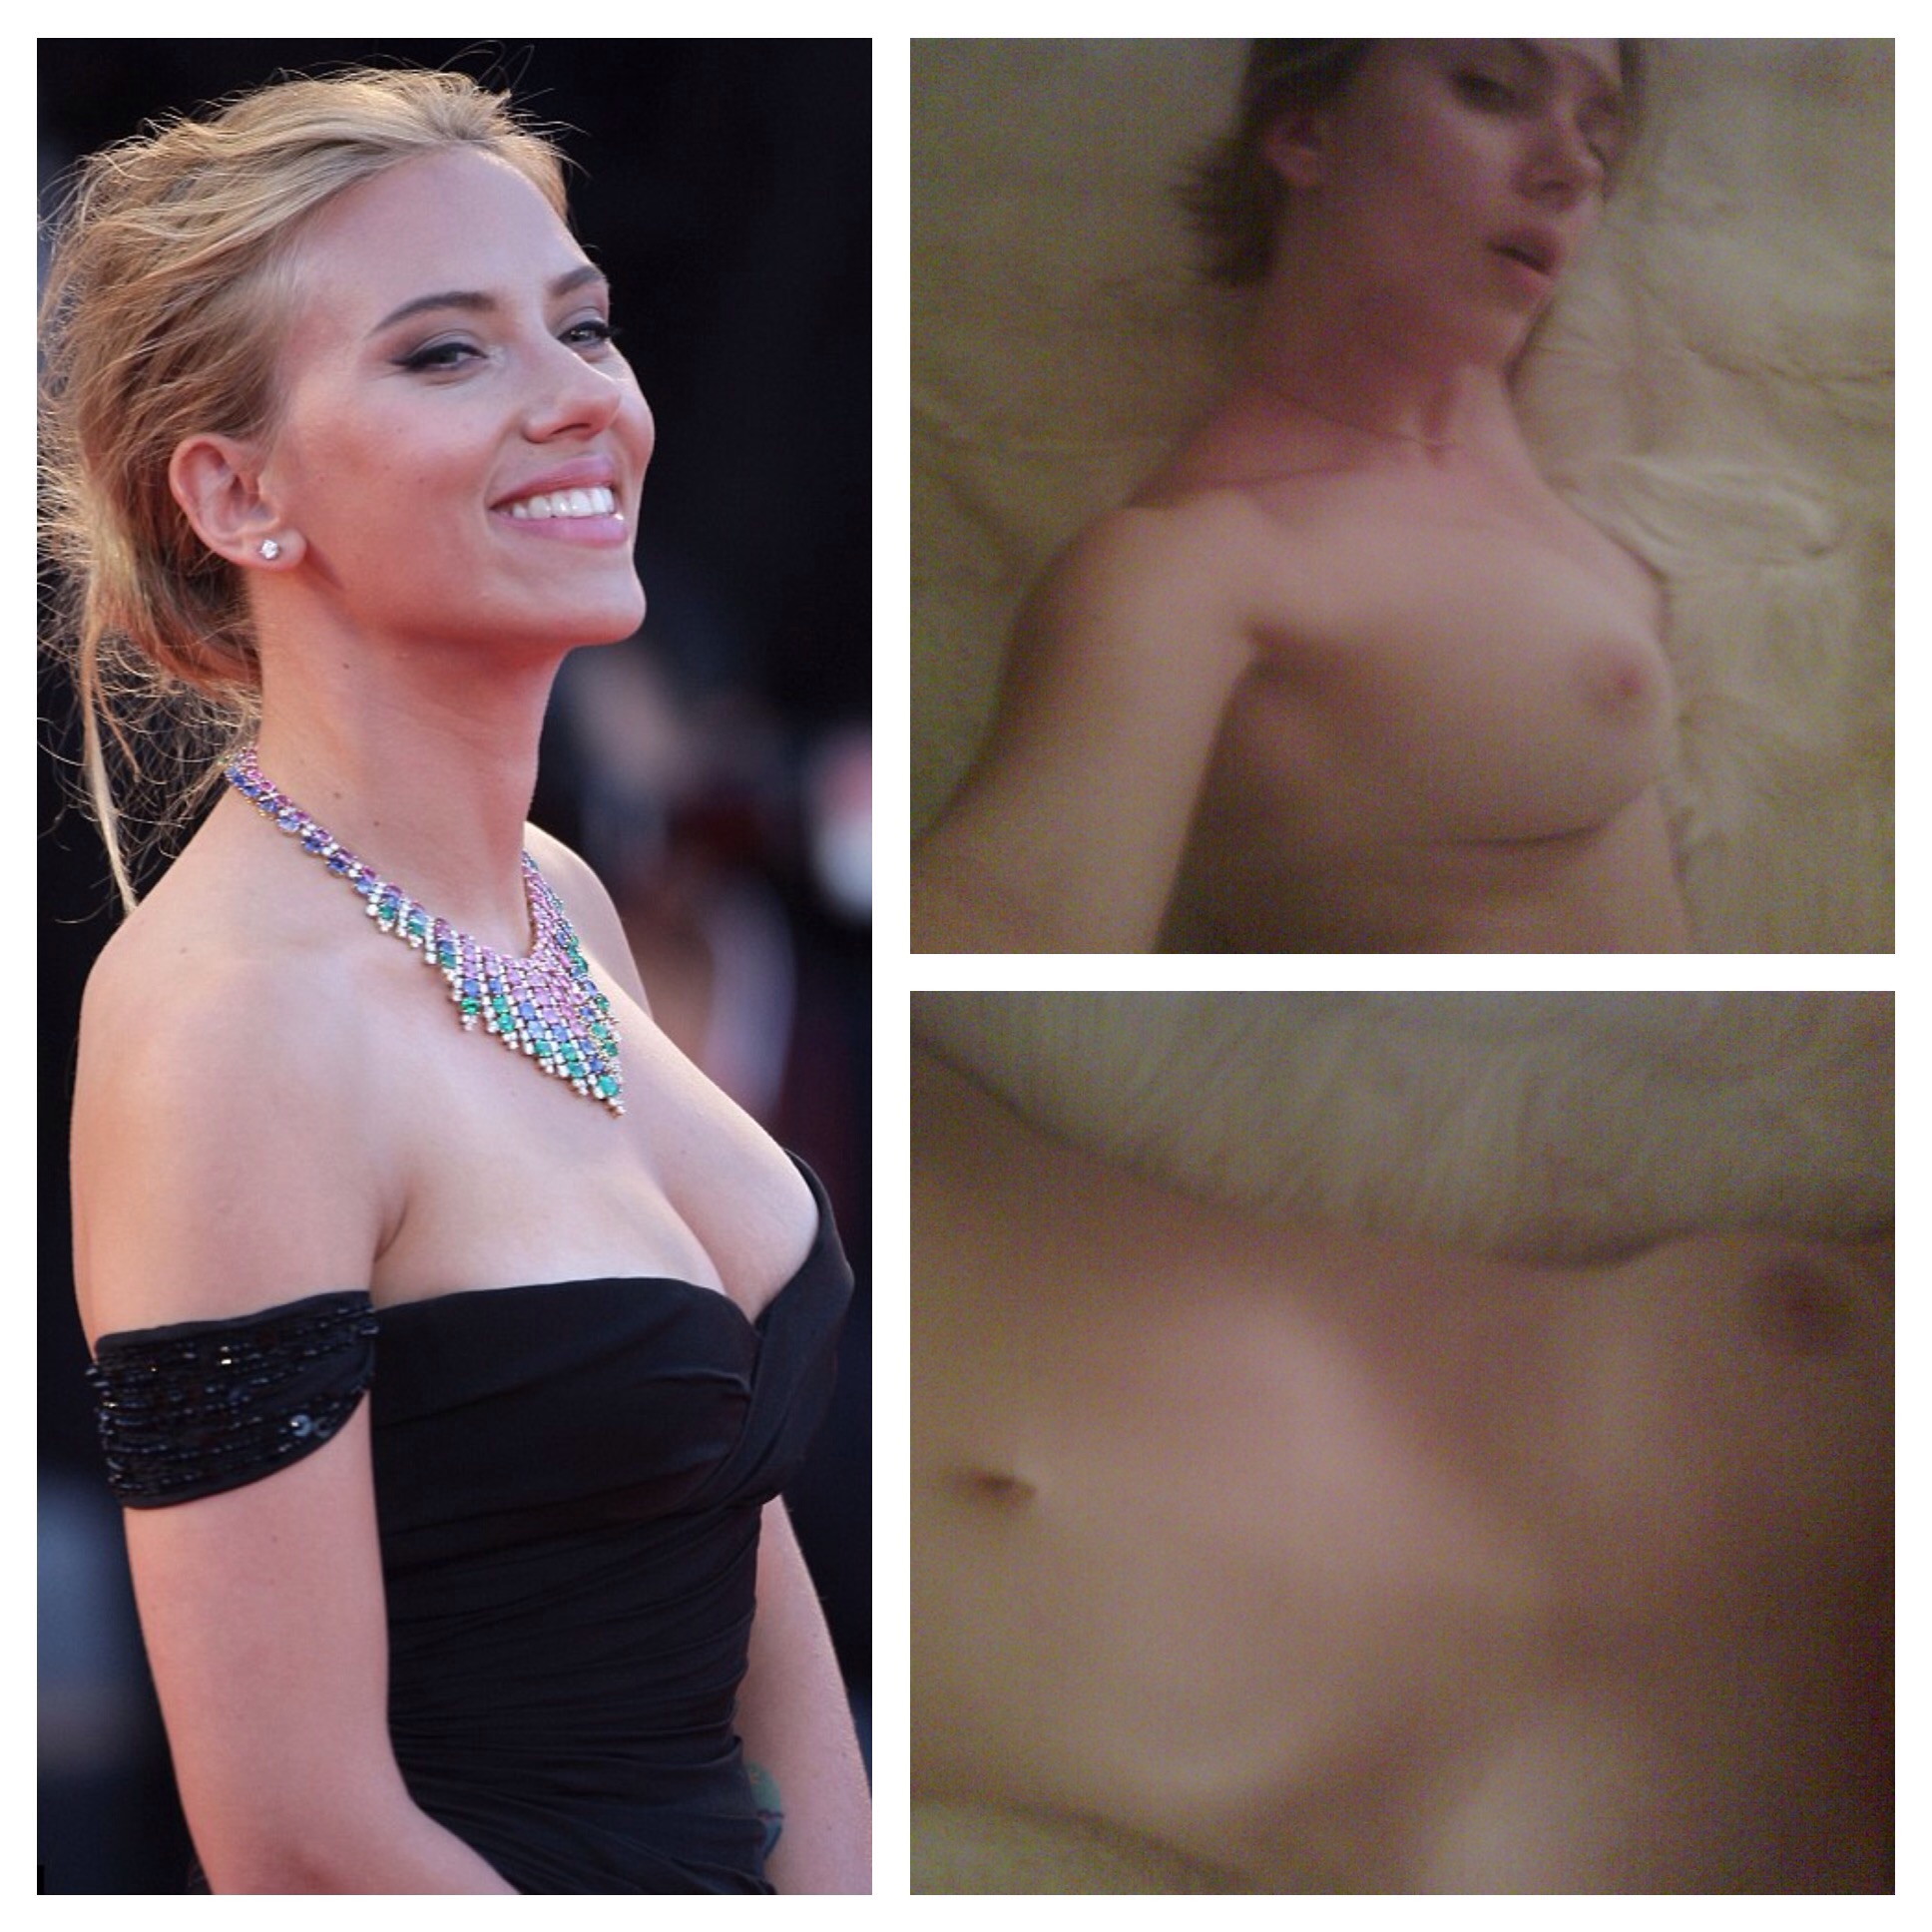 Scarlett johanson nudes